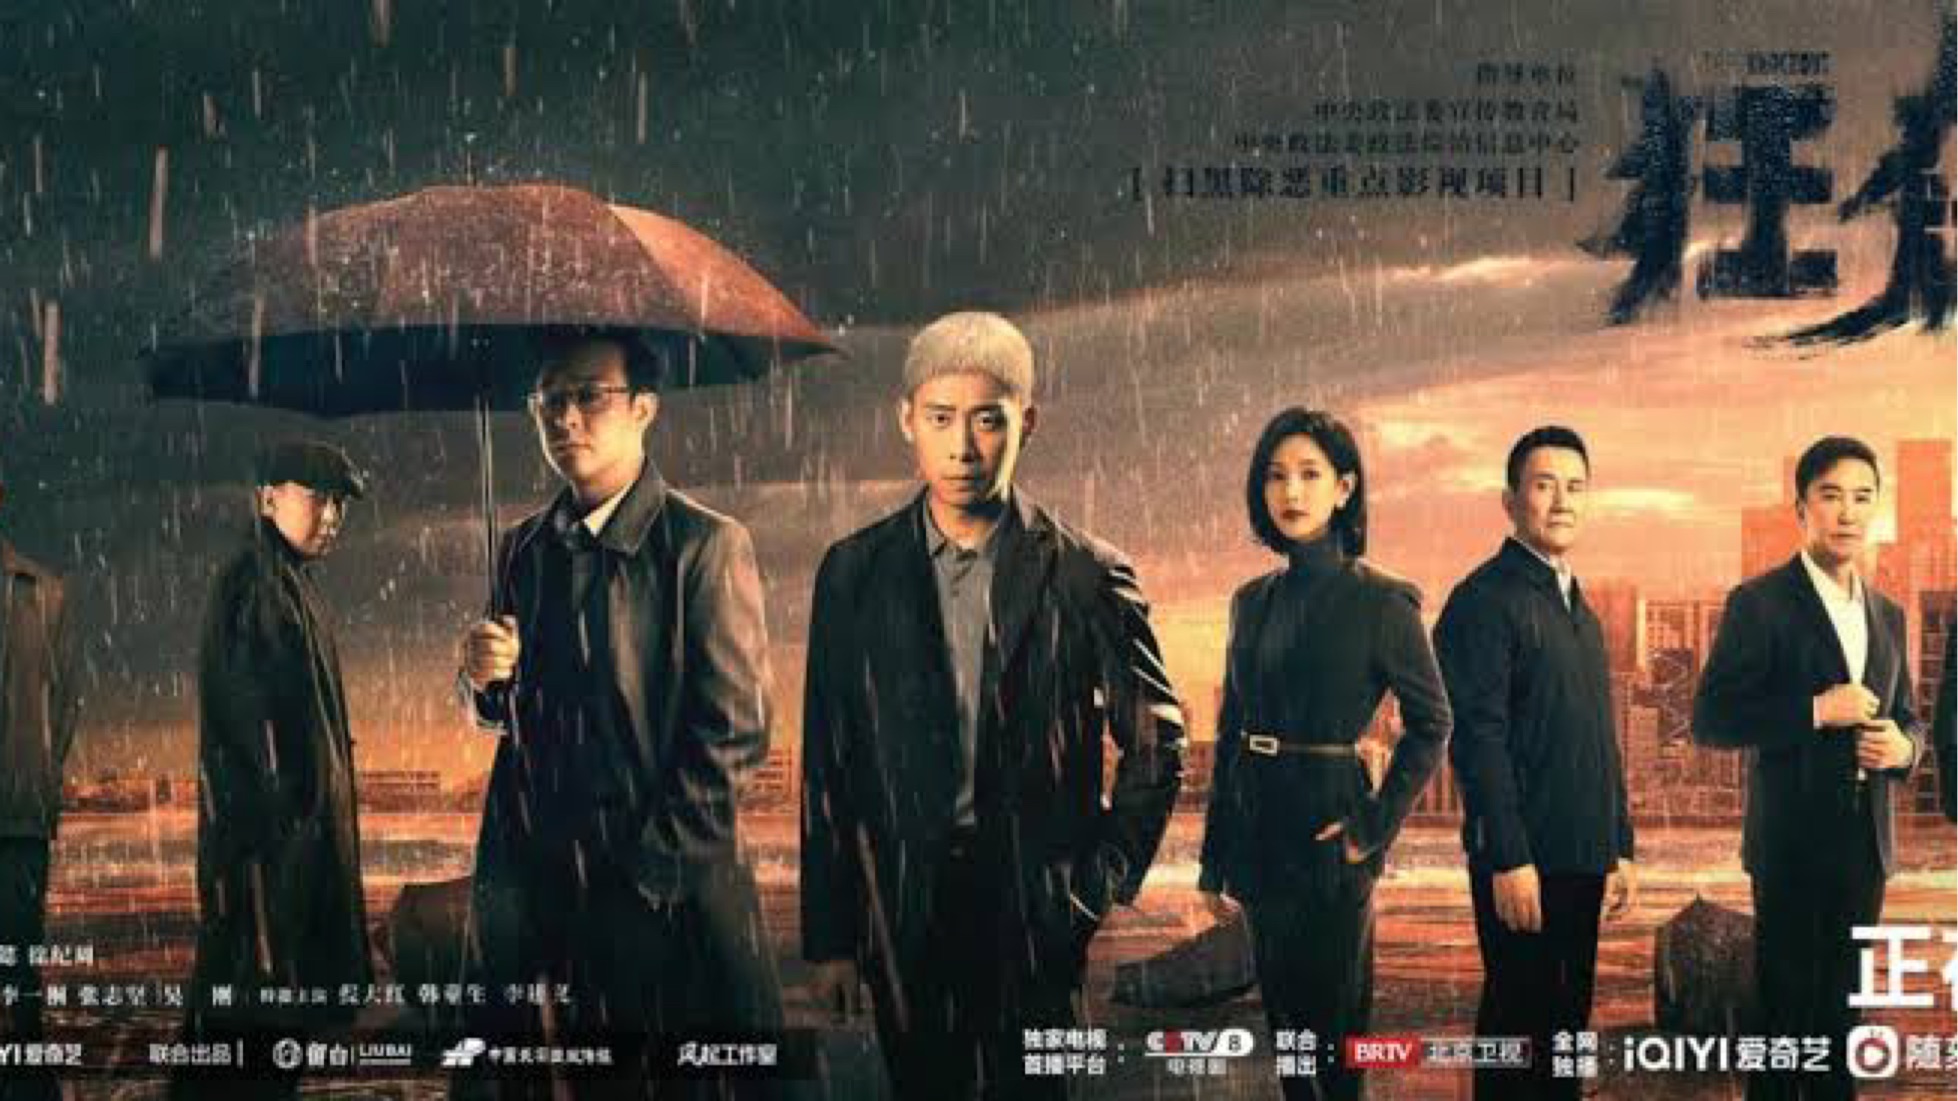 《黑社会》系列——最杰出的华语黑帮电影，没有之一 - 知乎